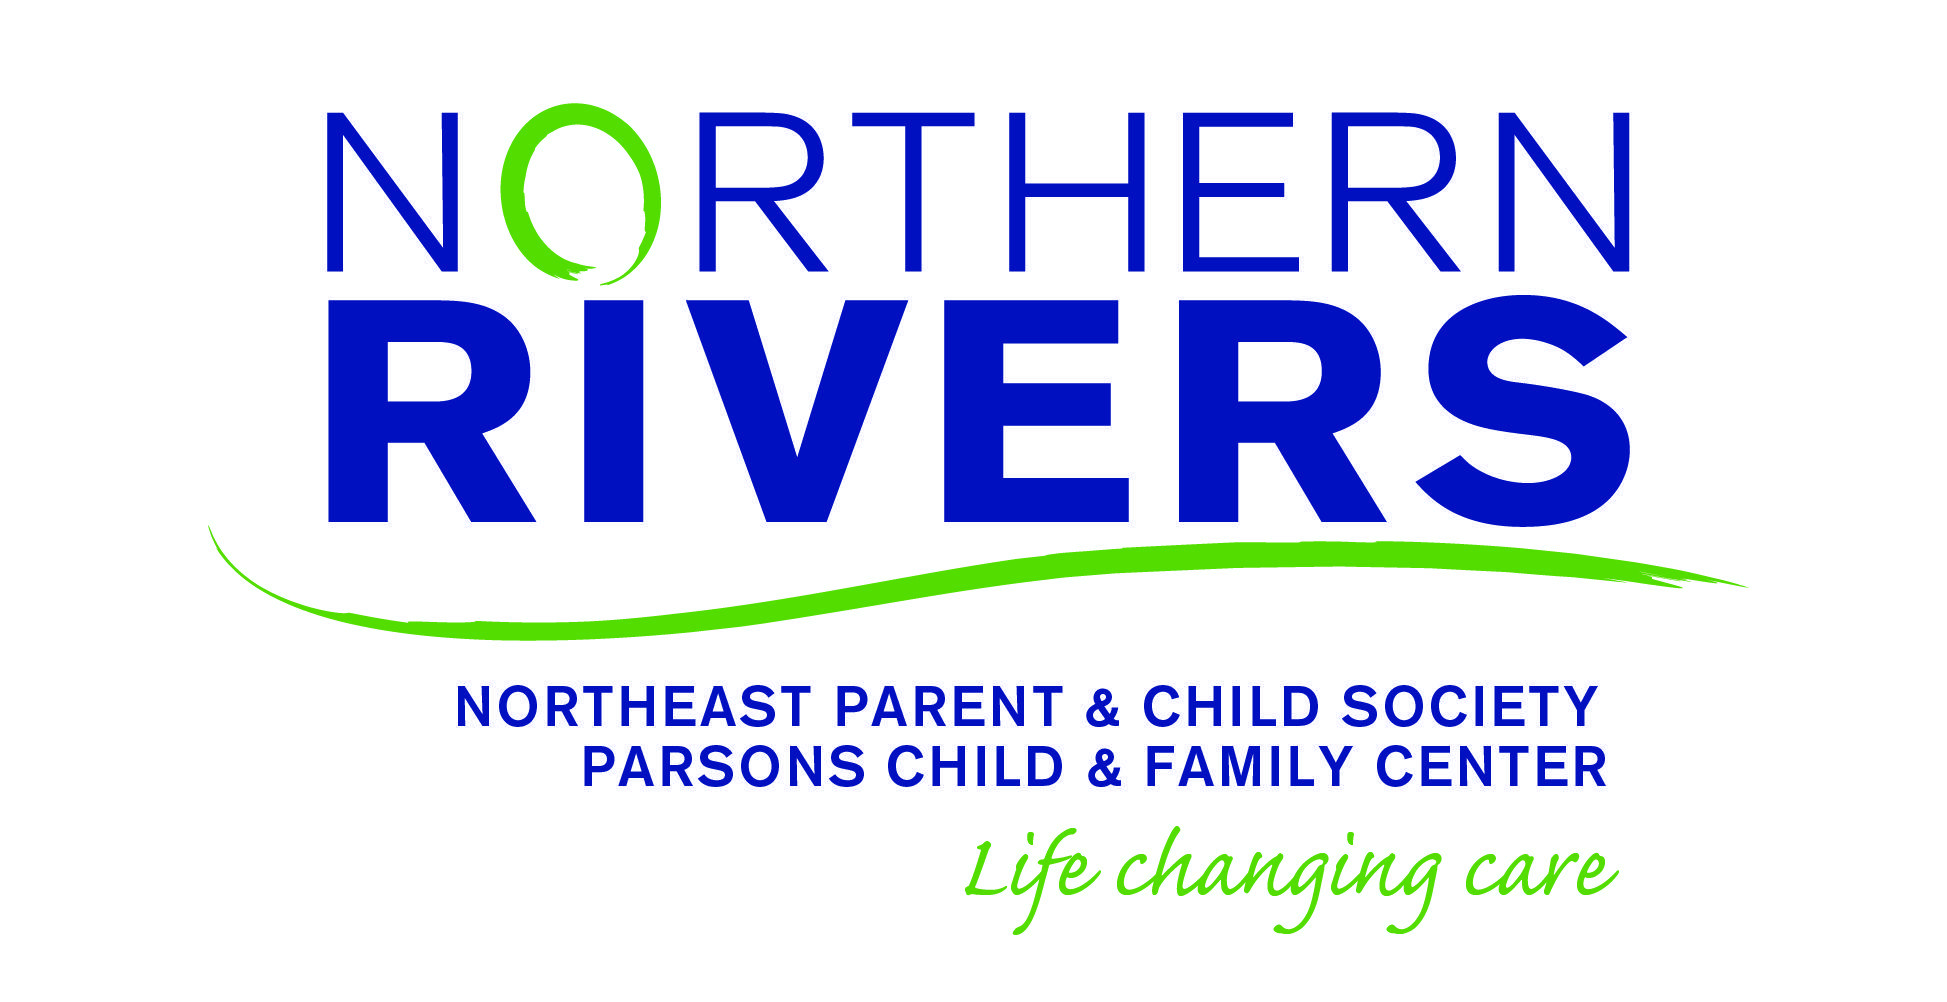 I Tag Logo - Logos - Northern Rivers